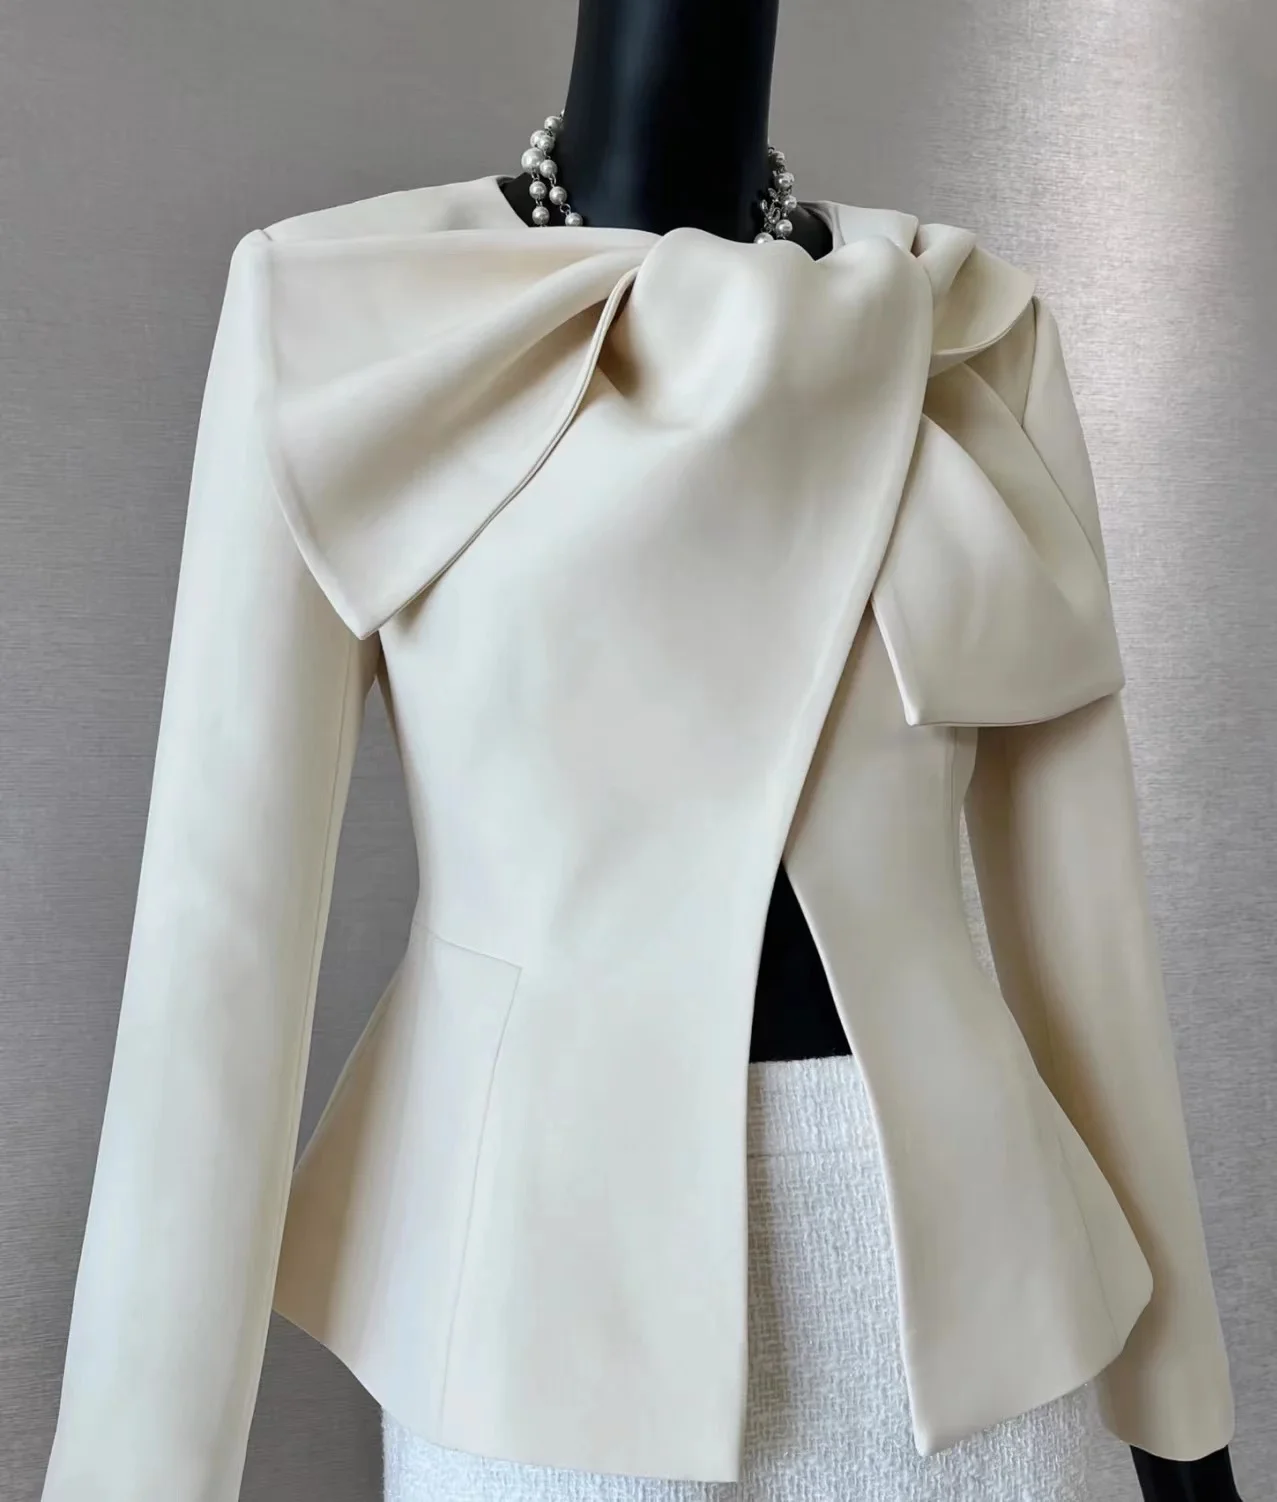 Классическая приталенная куртка портновских магазинов из кремового крепа с бантом на воротнике и длинными рукавами